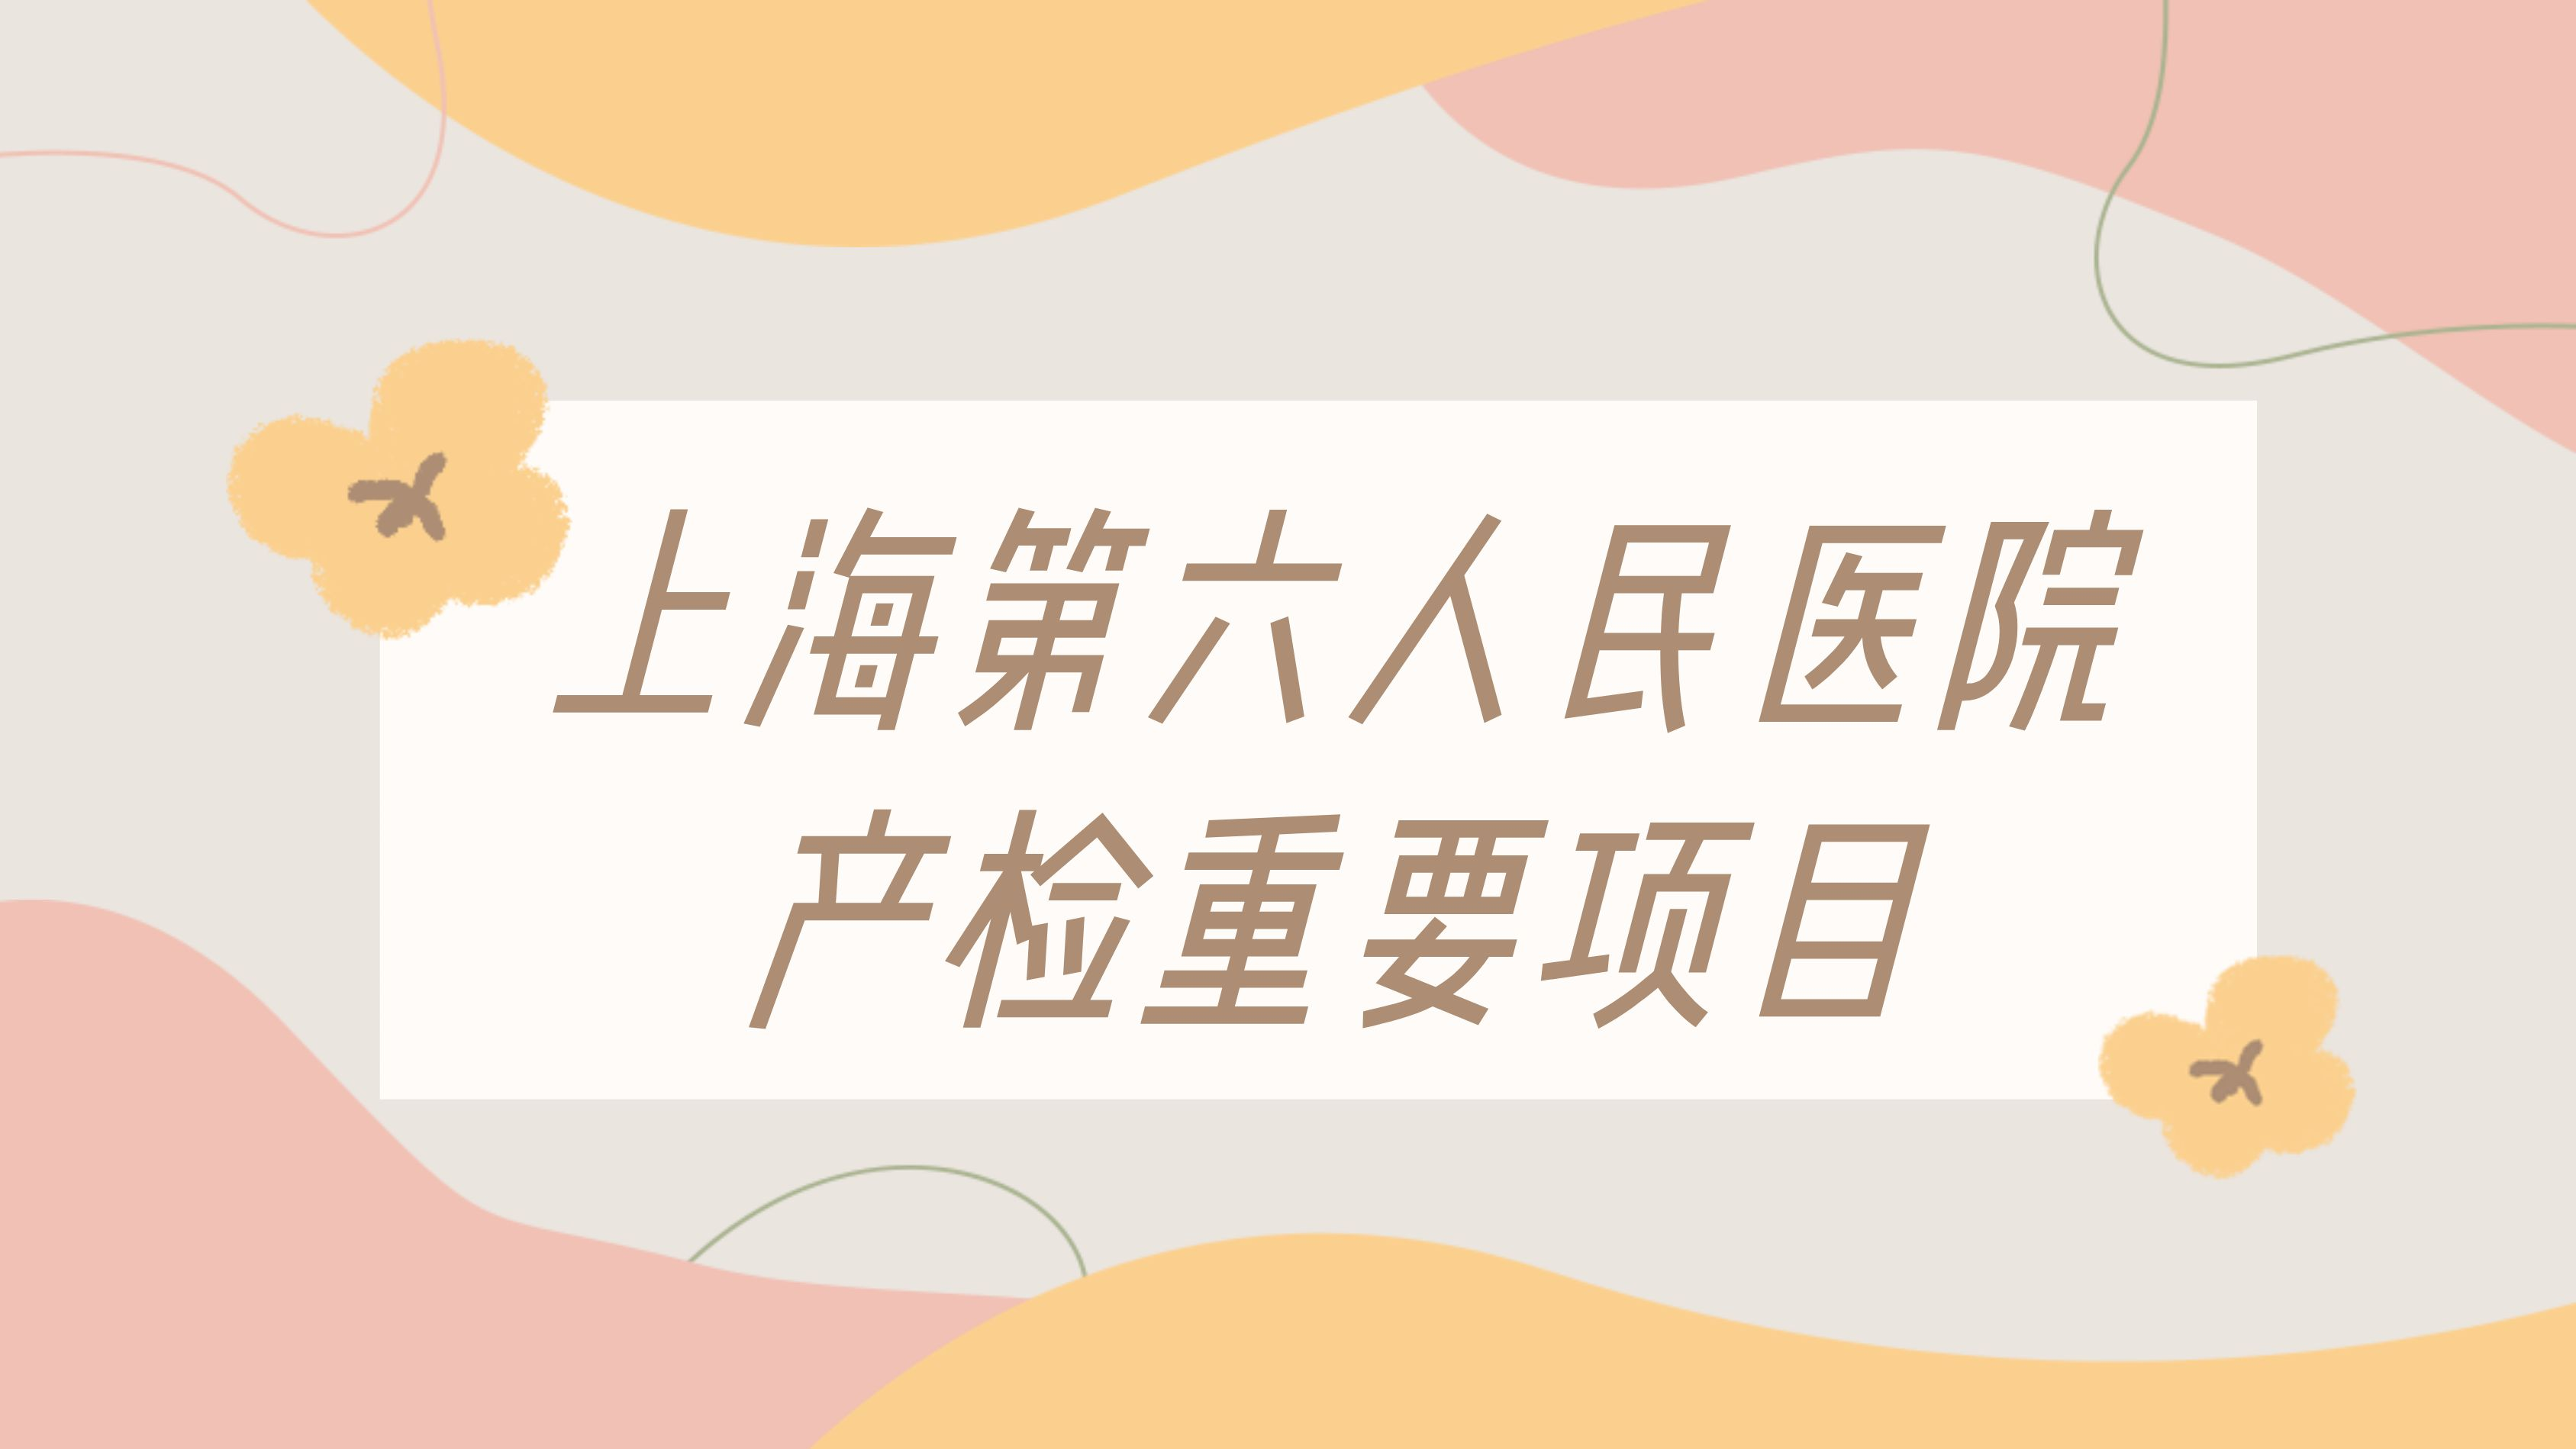 附属上海市第六人民医院2020年”住培”招录宣讲会顺利举行-上海交通大学医学院-新闻网